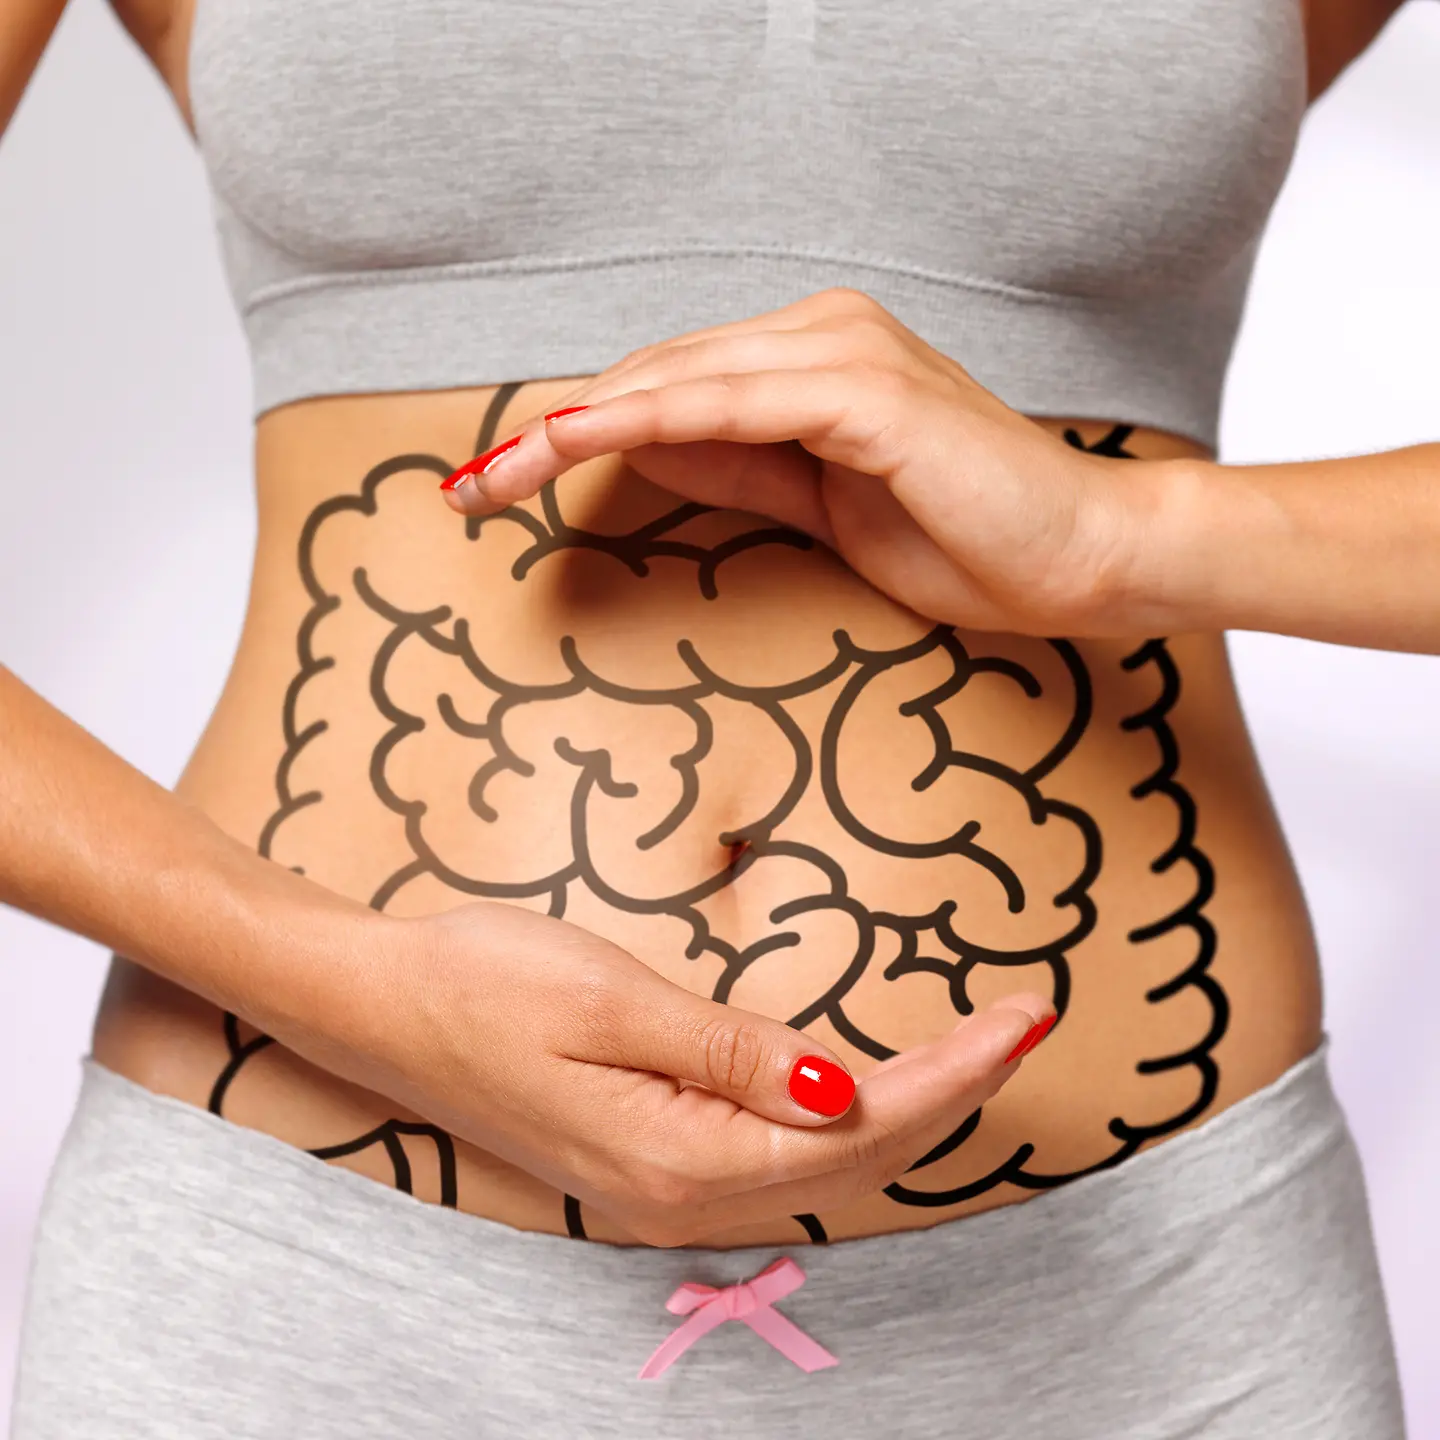 Bauch einer Frau mit einem gezeichneten Darm